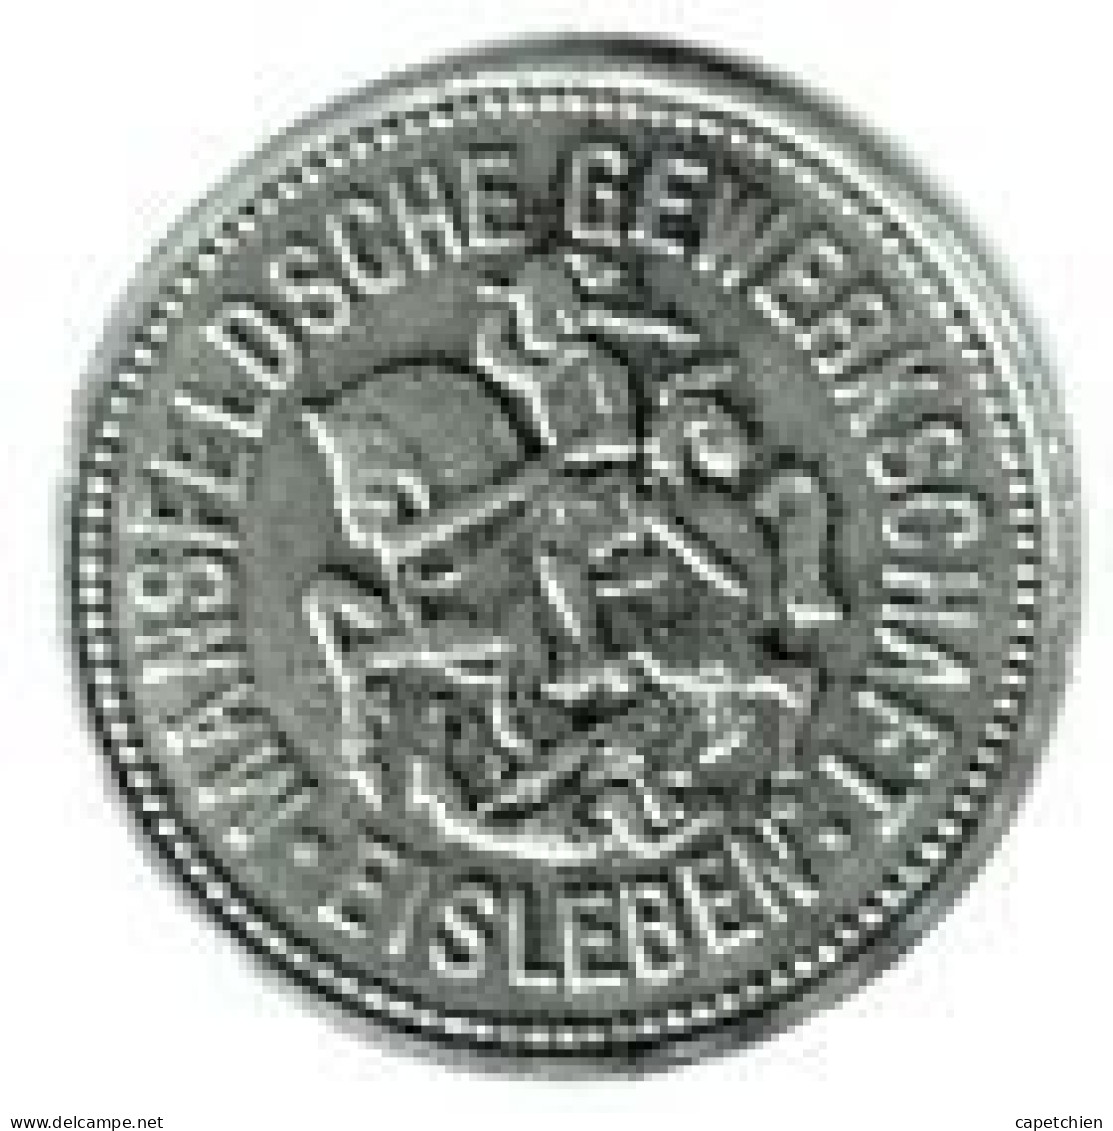 ALLEMAGNE / NOTGELD / MANSFELDSCHE GEWERKSCHAFT EISLEBEN / 10 PFENNIG / 1917 / ZINC / 22.85 Mm  / 3.14 G - Monetary/Of Necessity